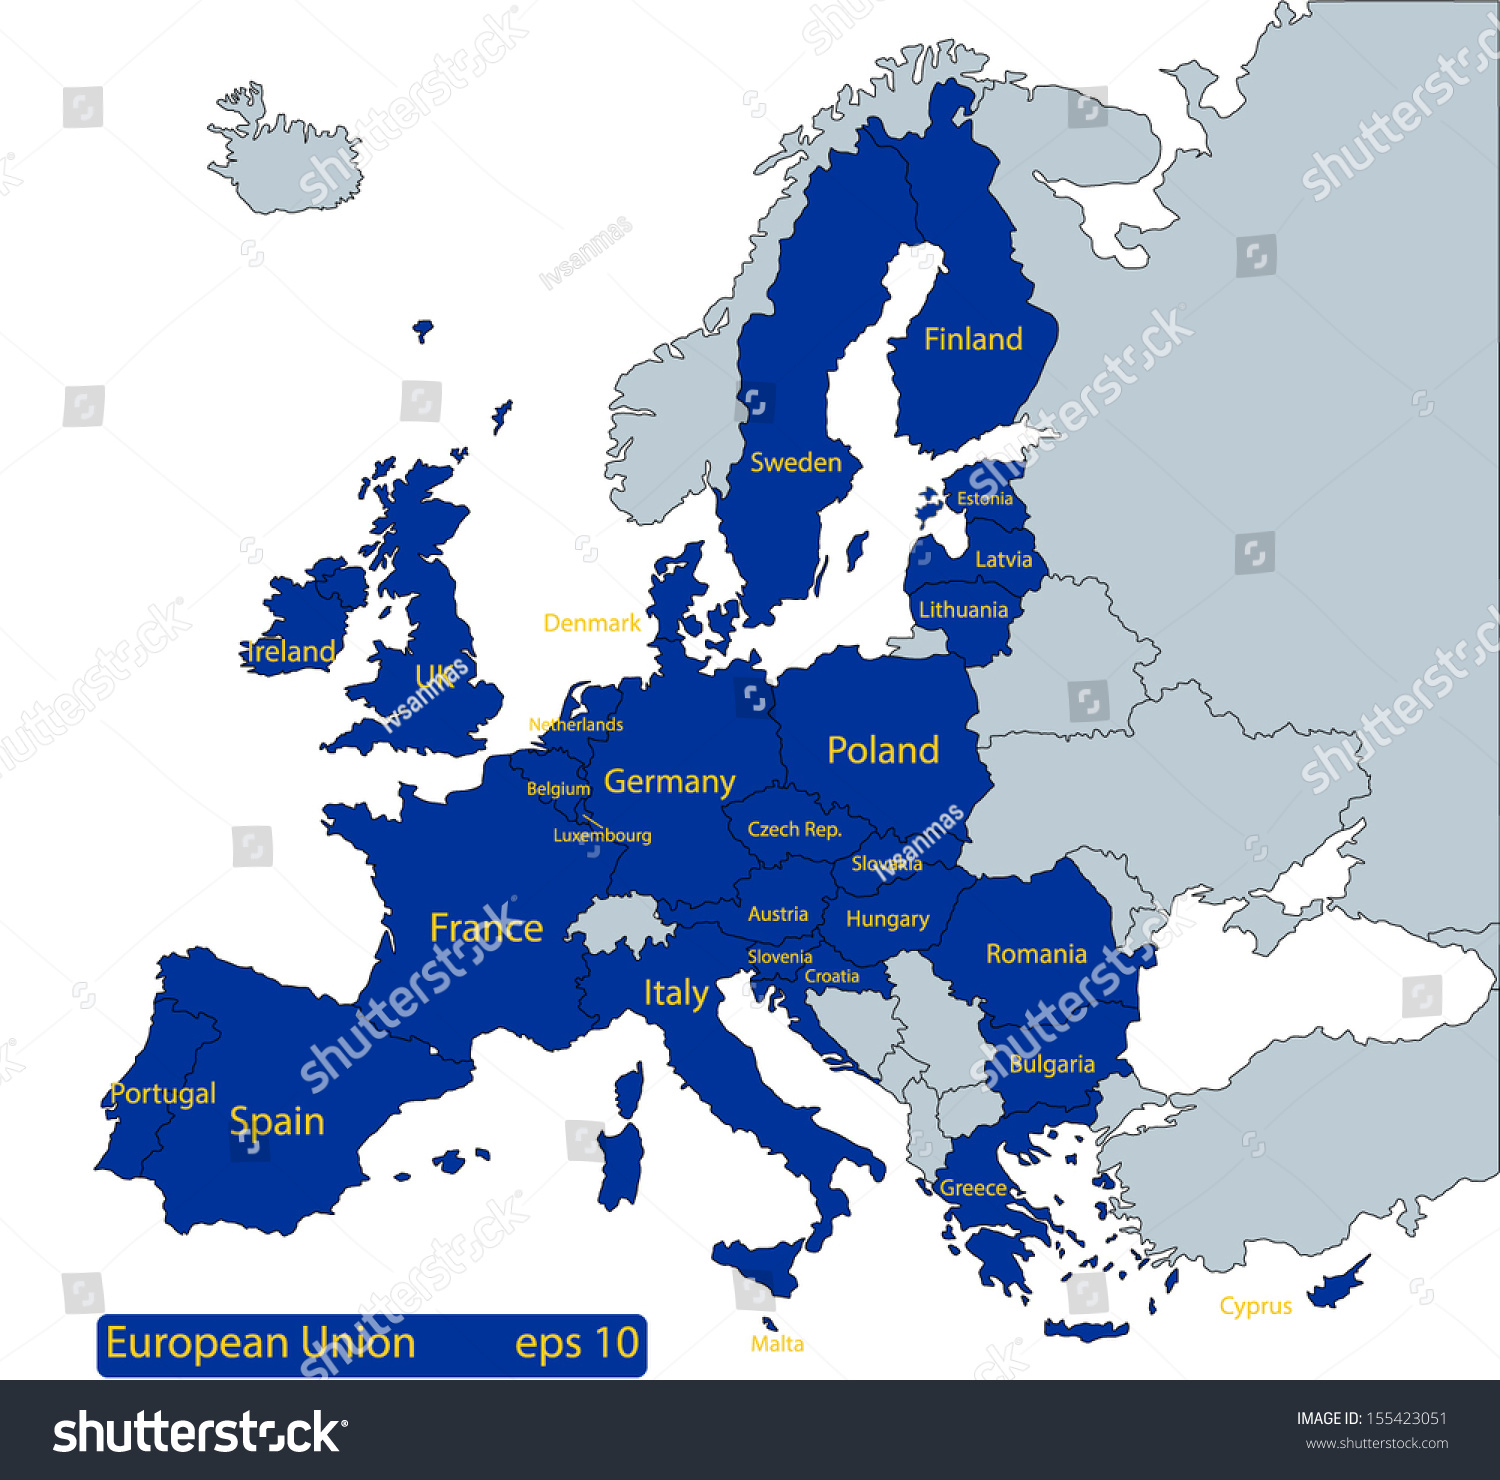 Image Vectorielle De Stock De Carte De L'europe, Avec Les avec Carte D Europe Avec Pays